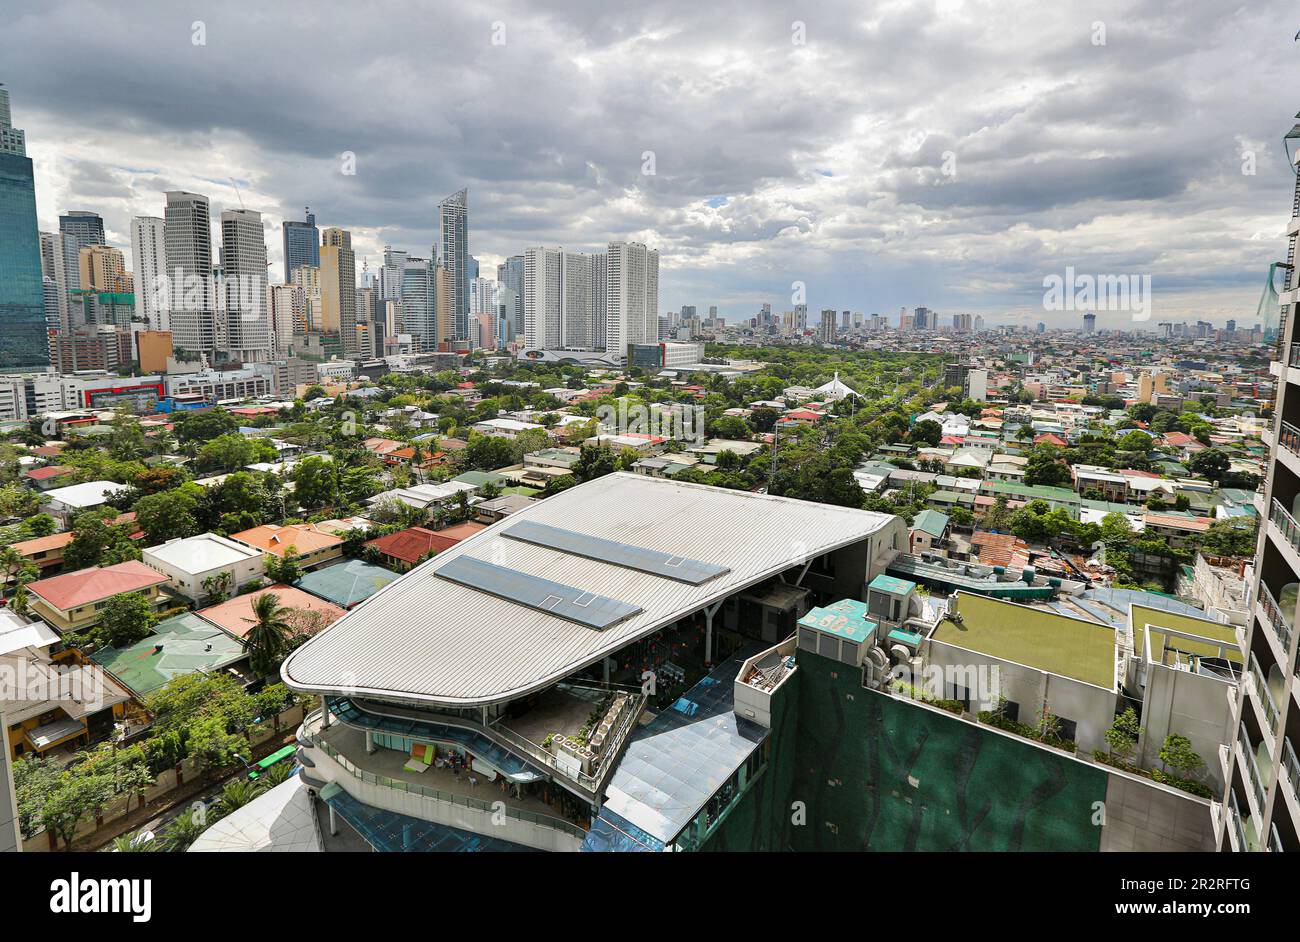 Centro finanziario Makati, edifici moderni e villaggio, skyline nuvoloso Filippine, Barangay Poblacion Bel Air, Century City Mall, Manila, Asia Foto Stock